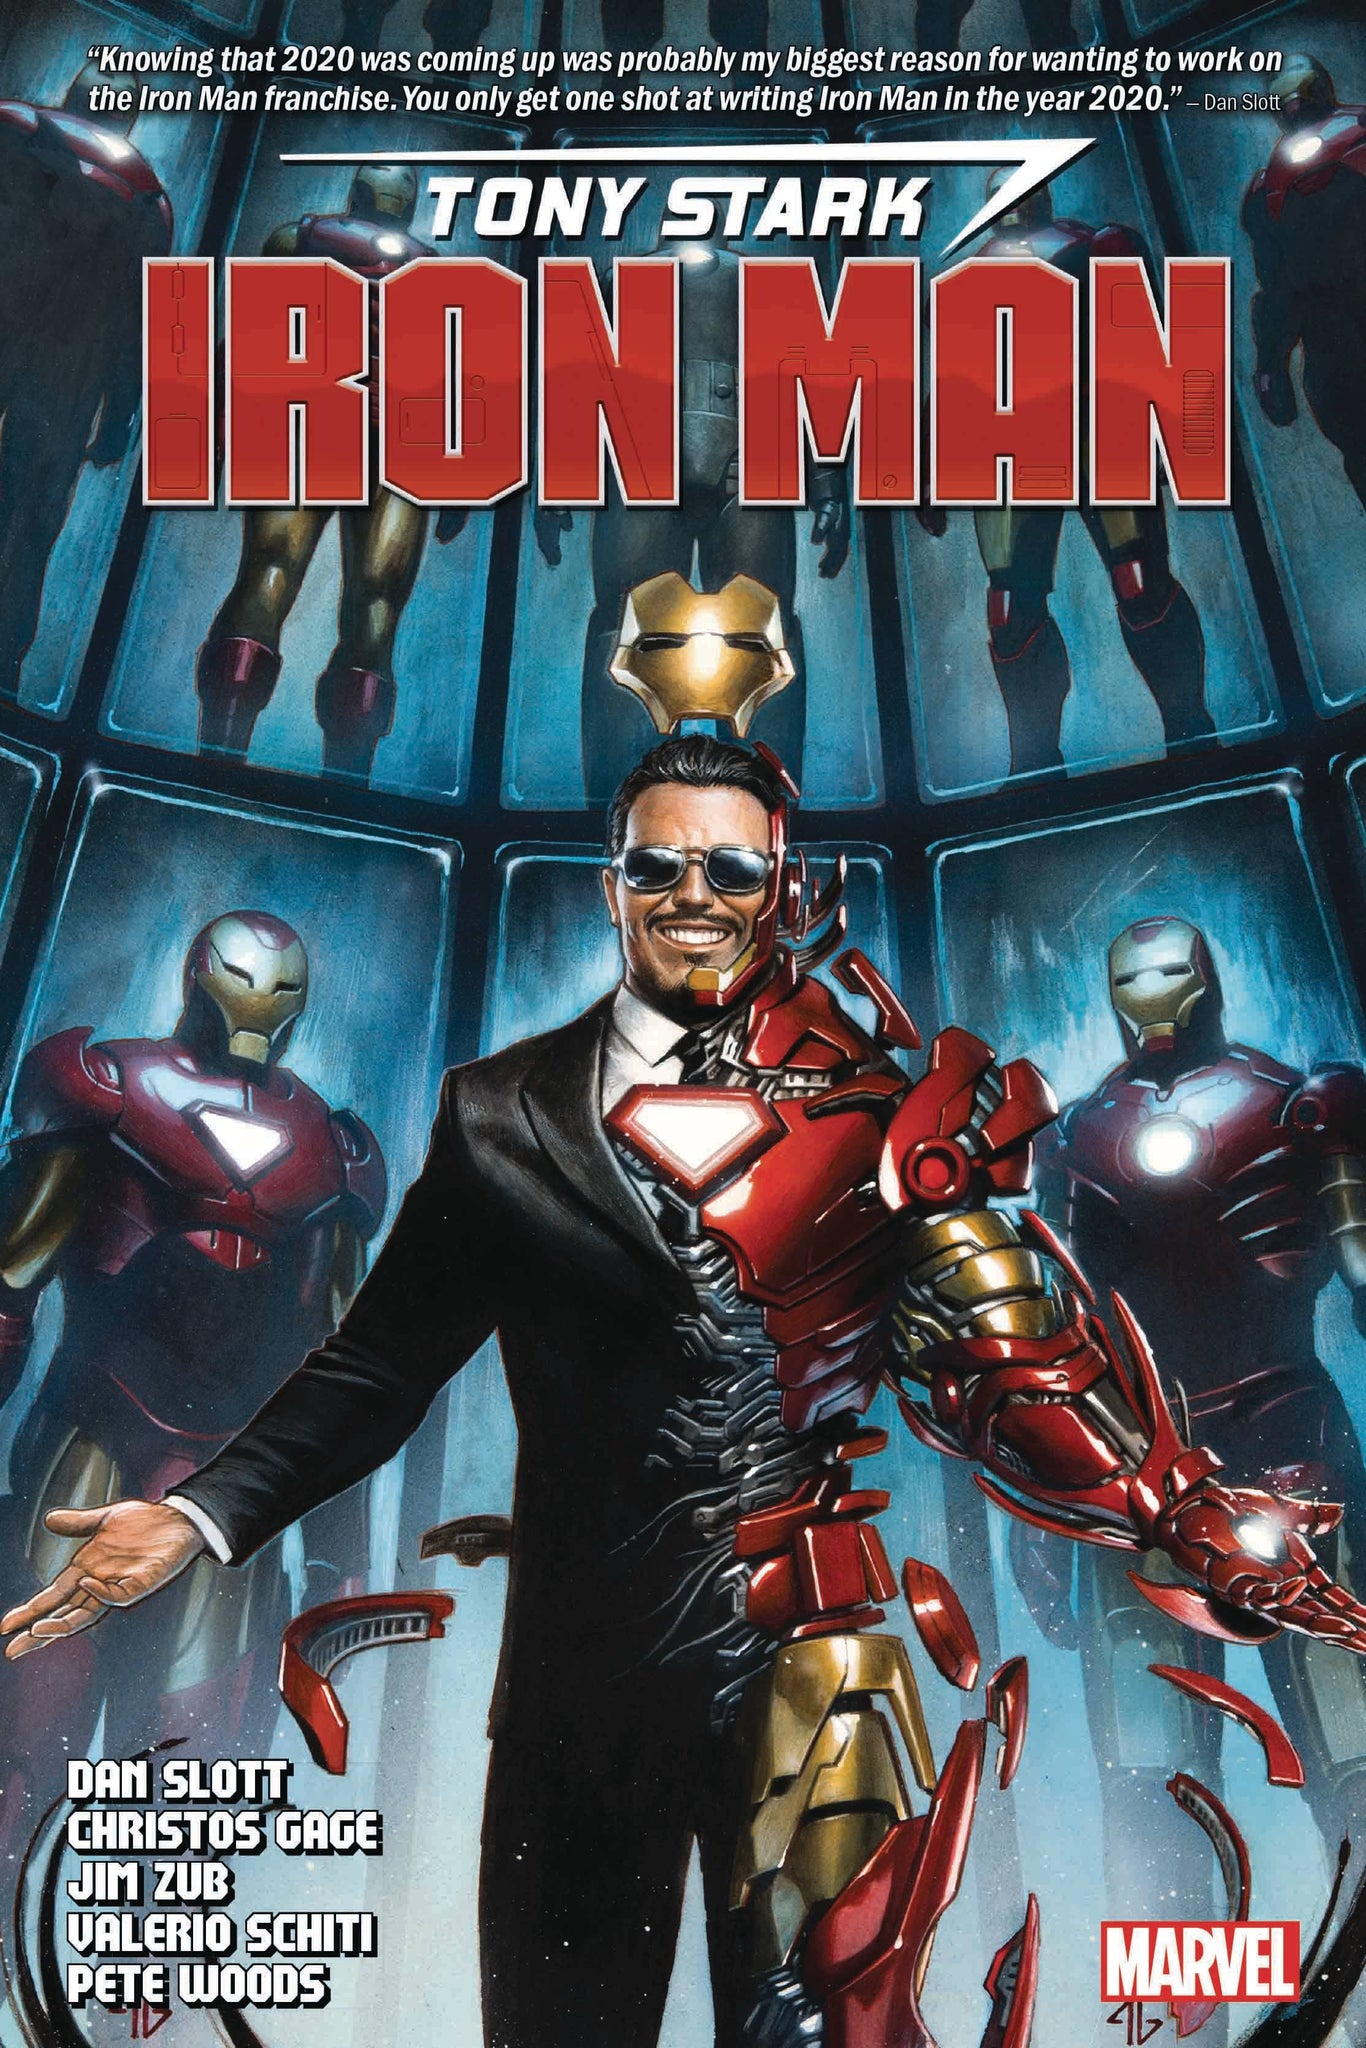 Tony Stark: Iron Man (2018) by Dan Slott Omnibus HC